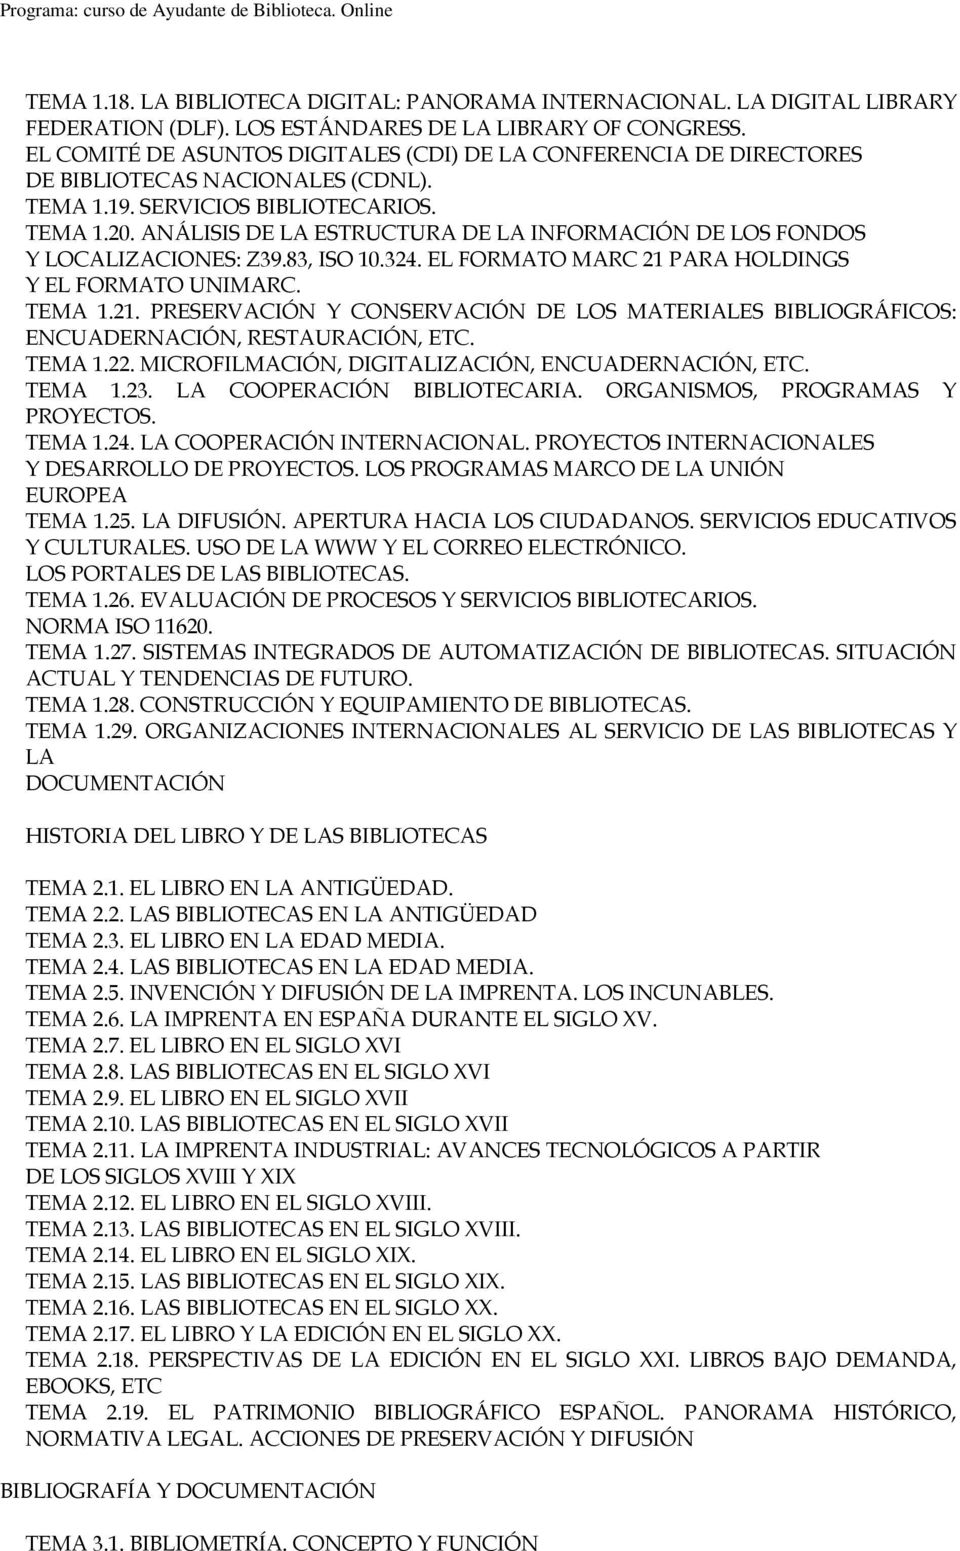 ANÁLISIS DE LA ESTRUCTURA DE LA INFORMACIÓN DE LOS FONDOS Y LOCALIZACIONES: Z39.83, ISO 10.324. EL FORMATO MARC 21 